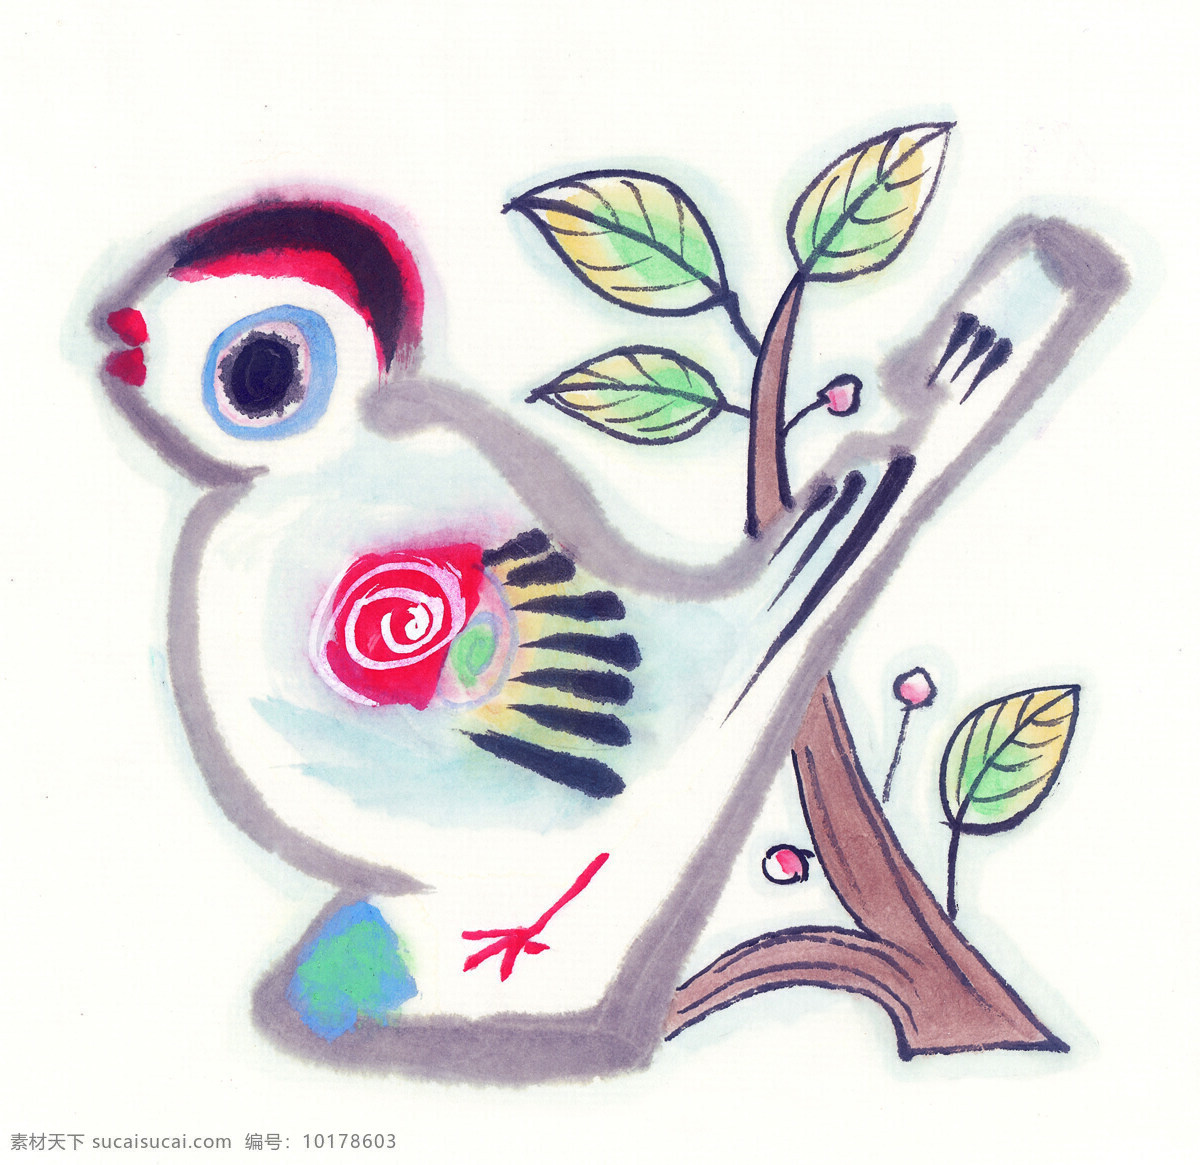 水墨鸟类 水彩画 水彩 画 水墨画 图案 文化 艺术 古代 传统 水墨花鸟 花鸟绘画 书画文字 文化艺术 白色